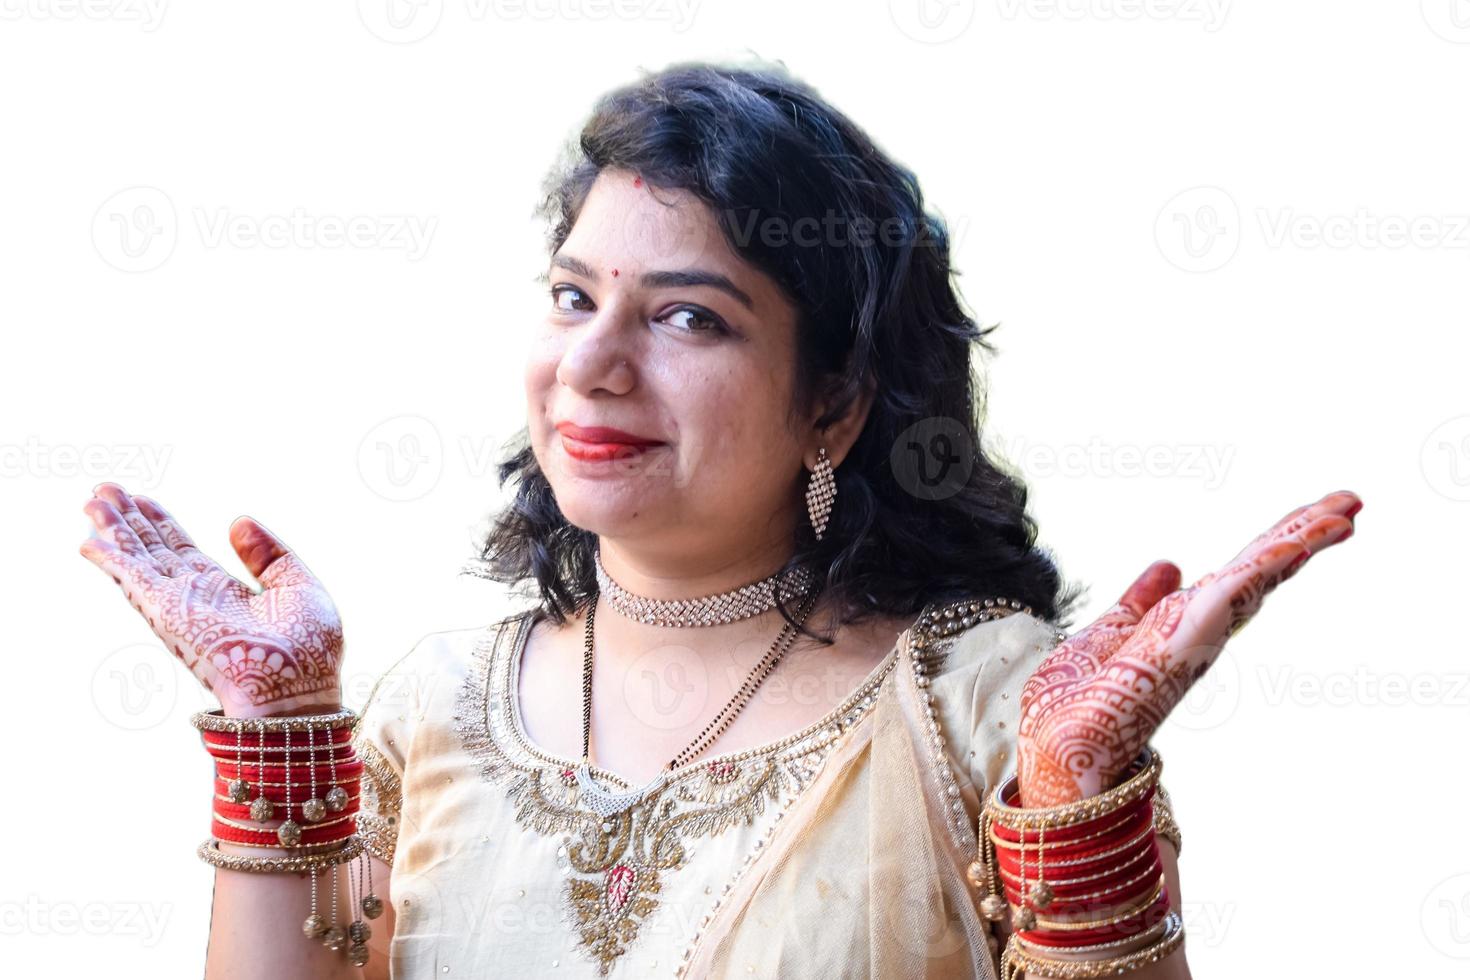 belle femme déguisée en tradition indienne avec un design mehndi au henné sur ses deux mains pour célébrer le grand festival de karwa chauth avec un fond blanc uni photo